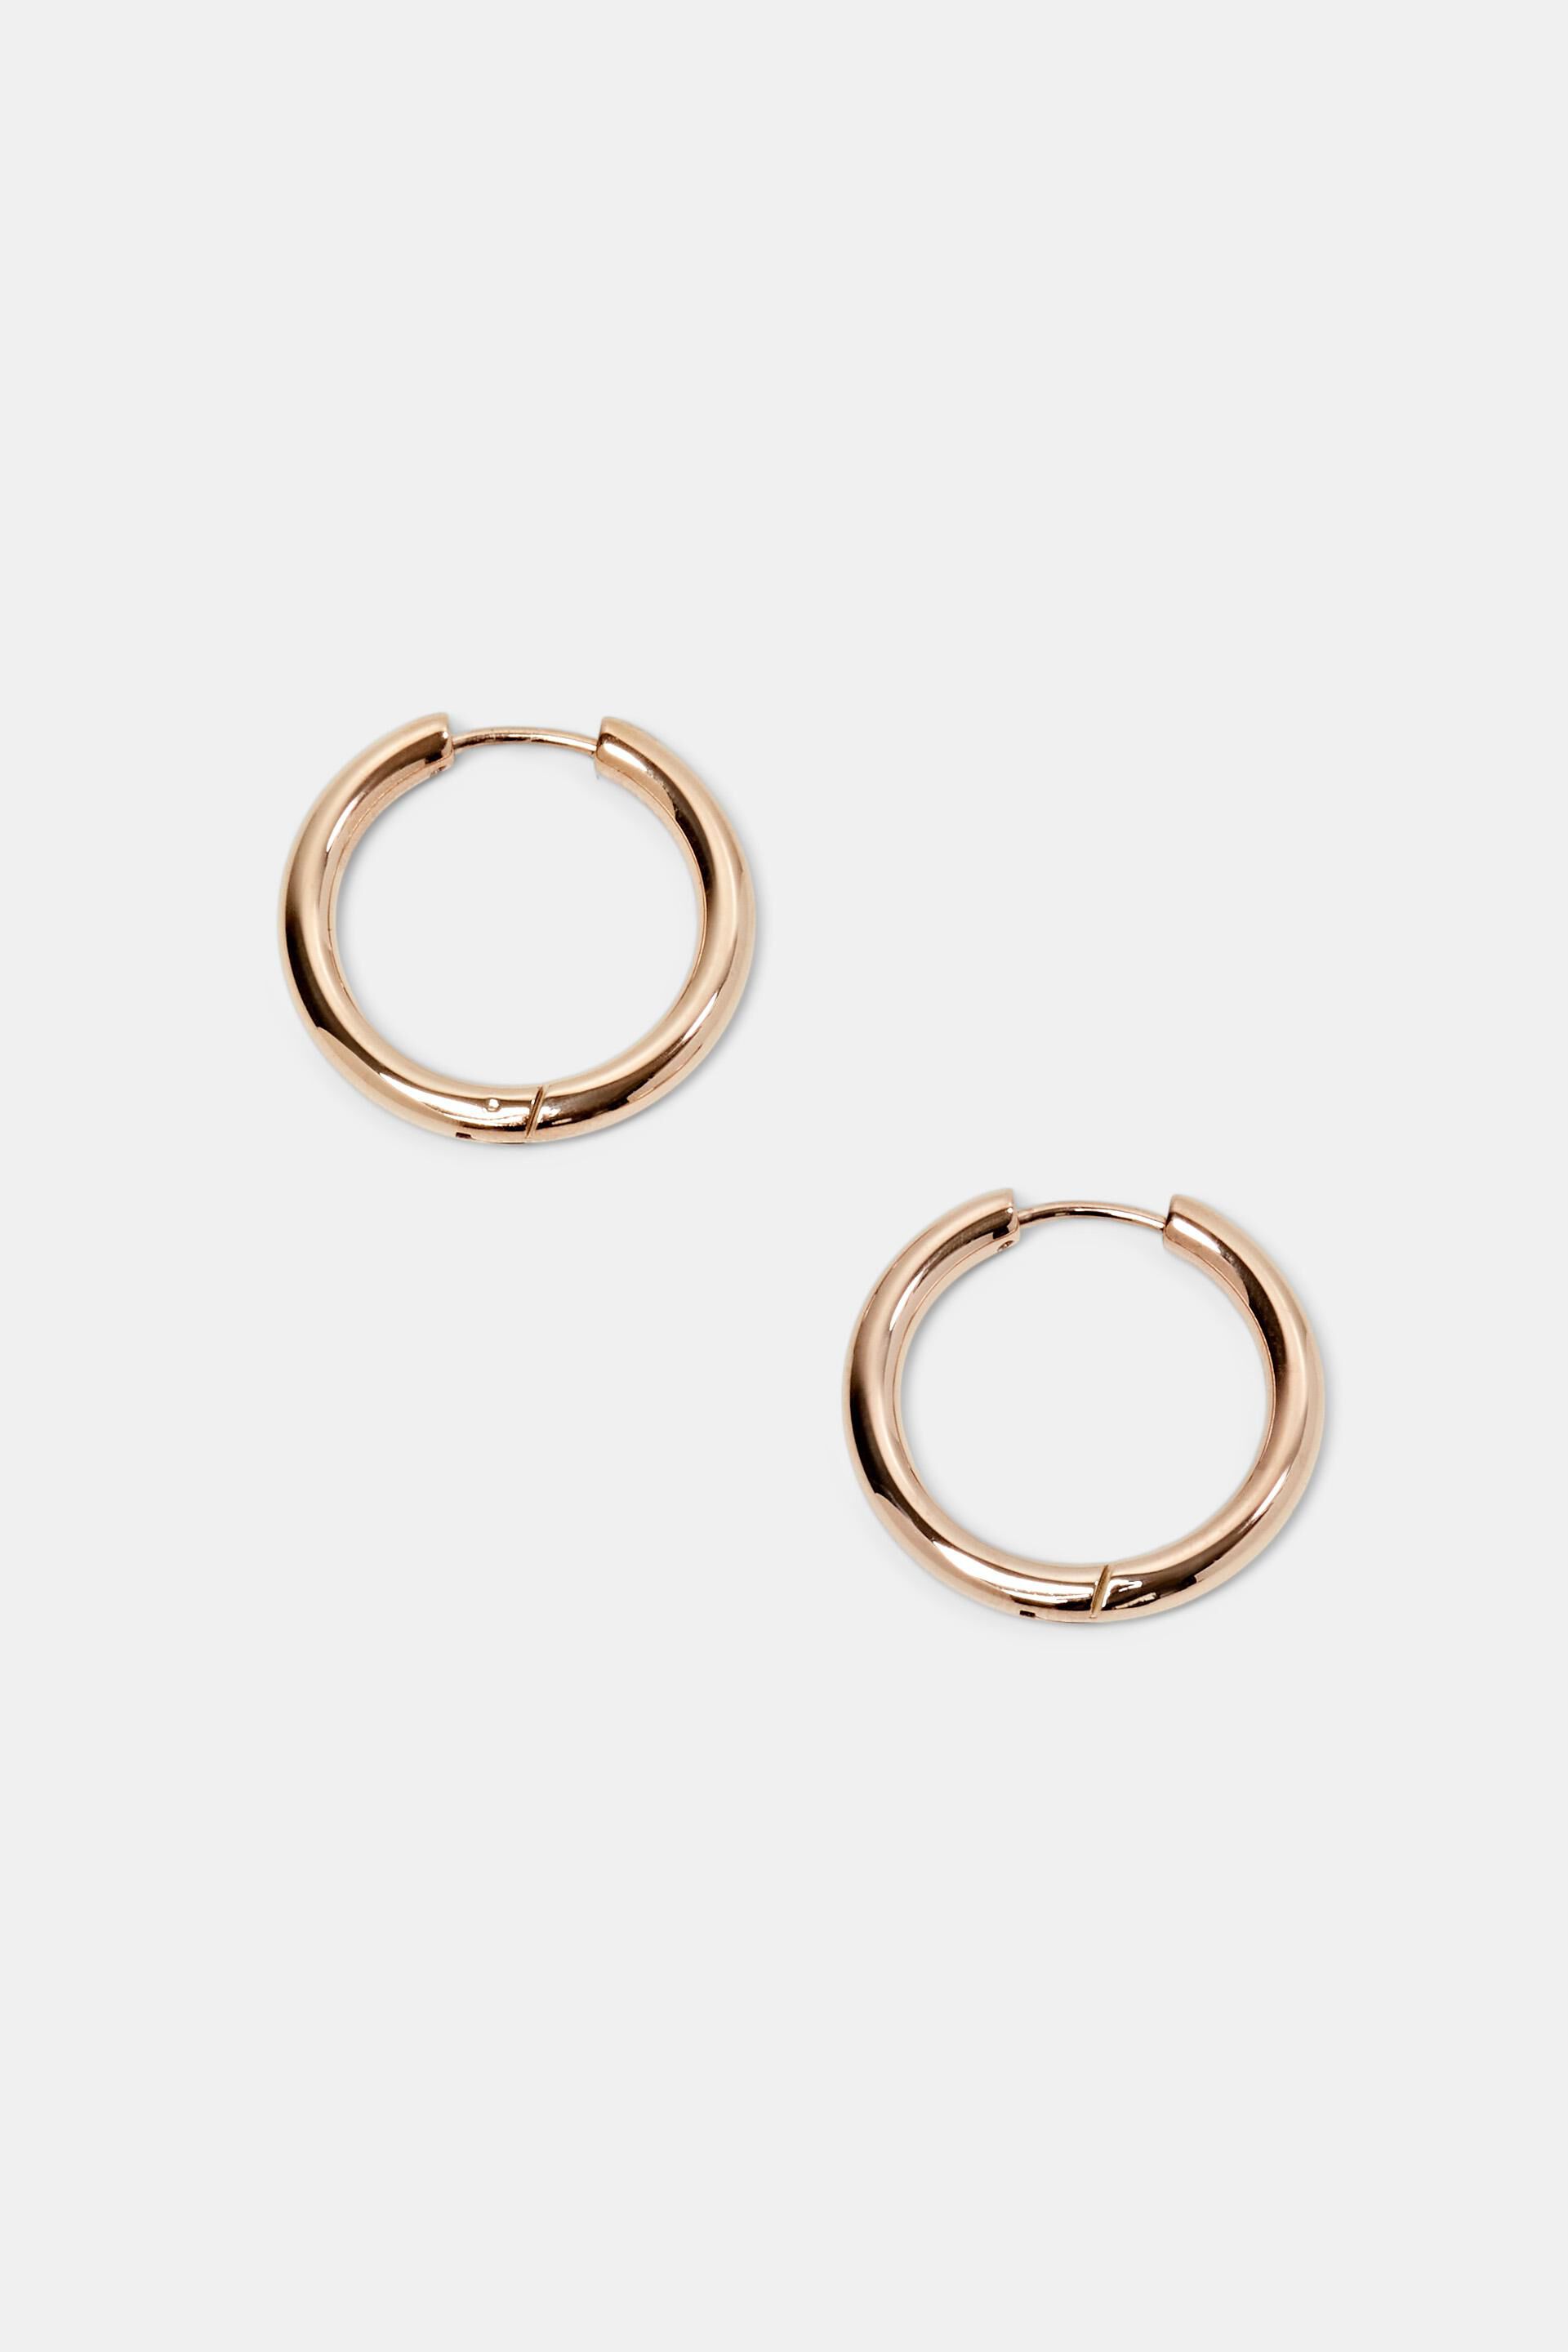 Esprit steel earrings, Small hoop stainless